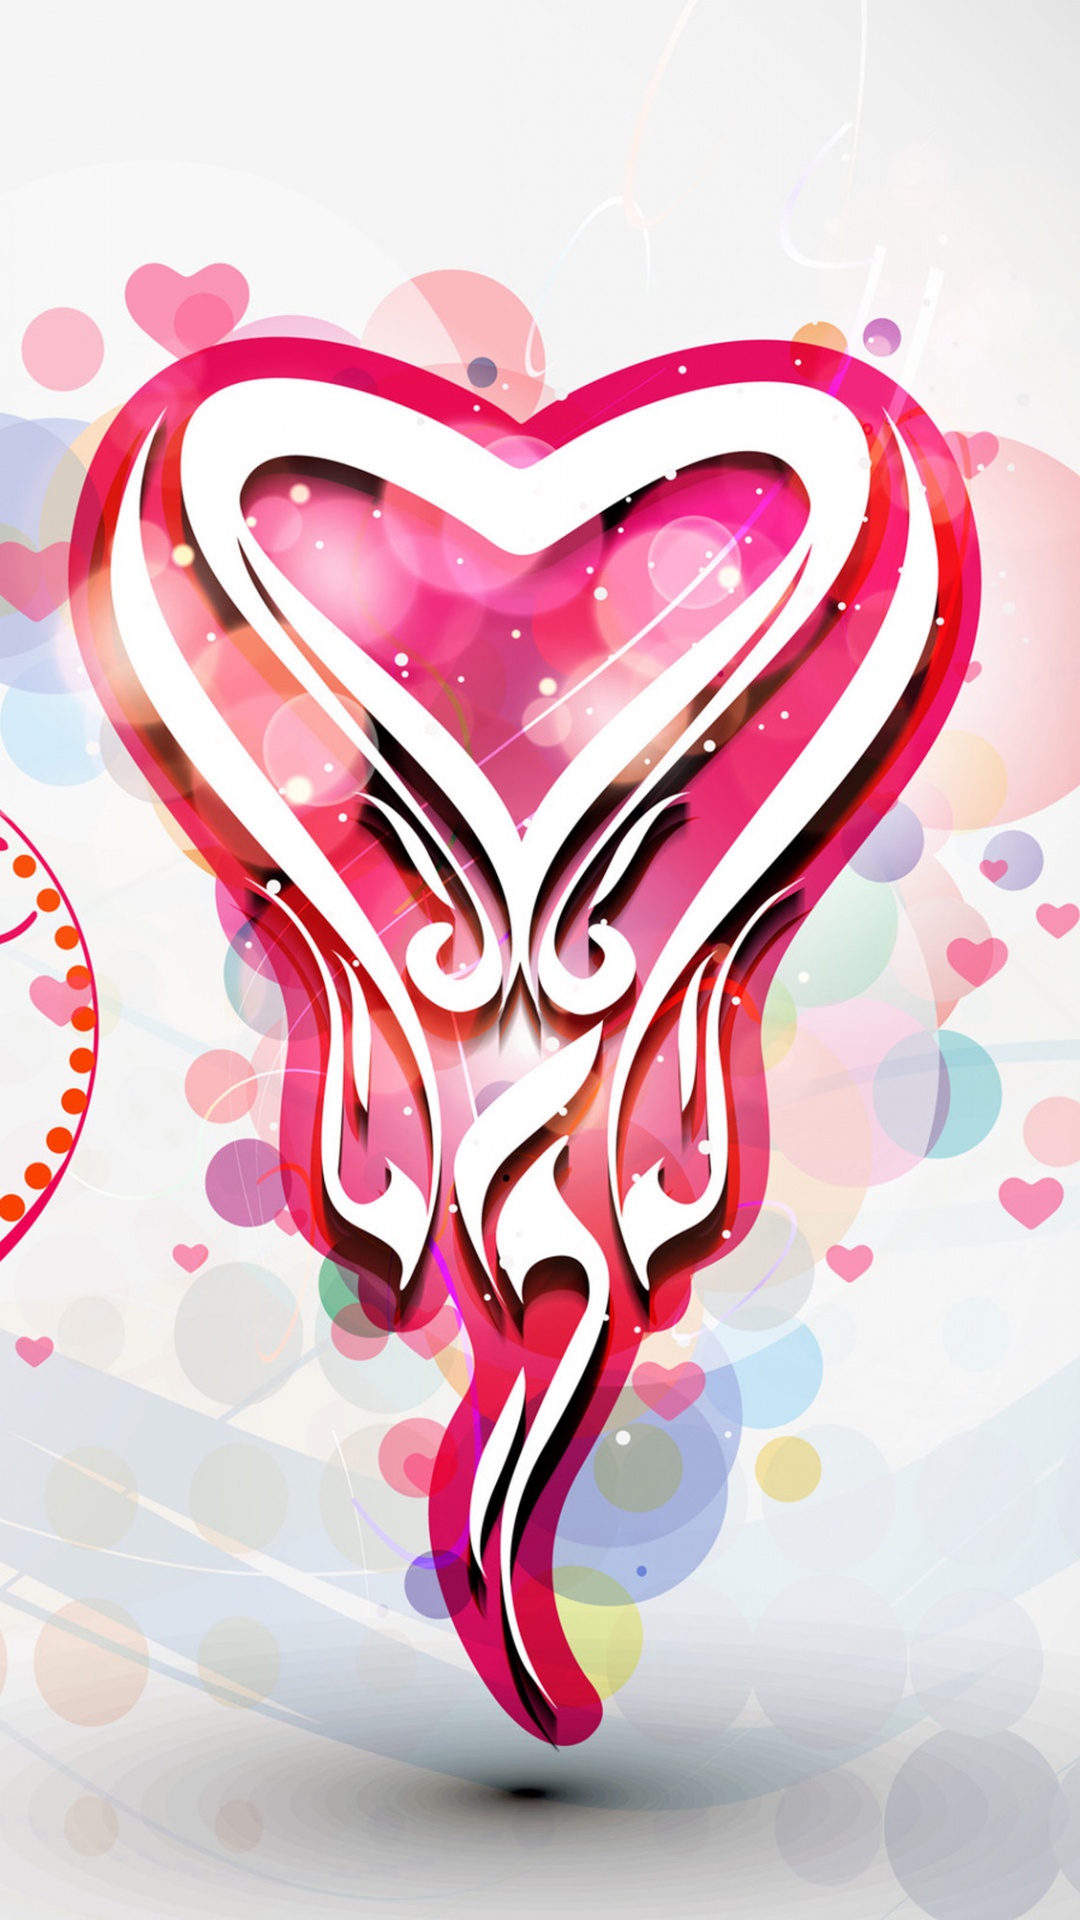 心脏, 粉红色, 文本, 爱情, 图形设计 壁纸 1080x1920 允许